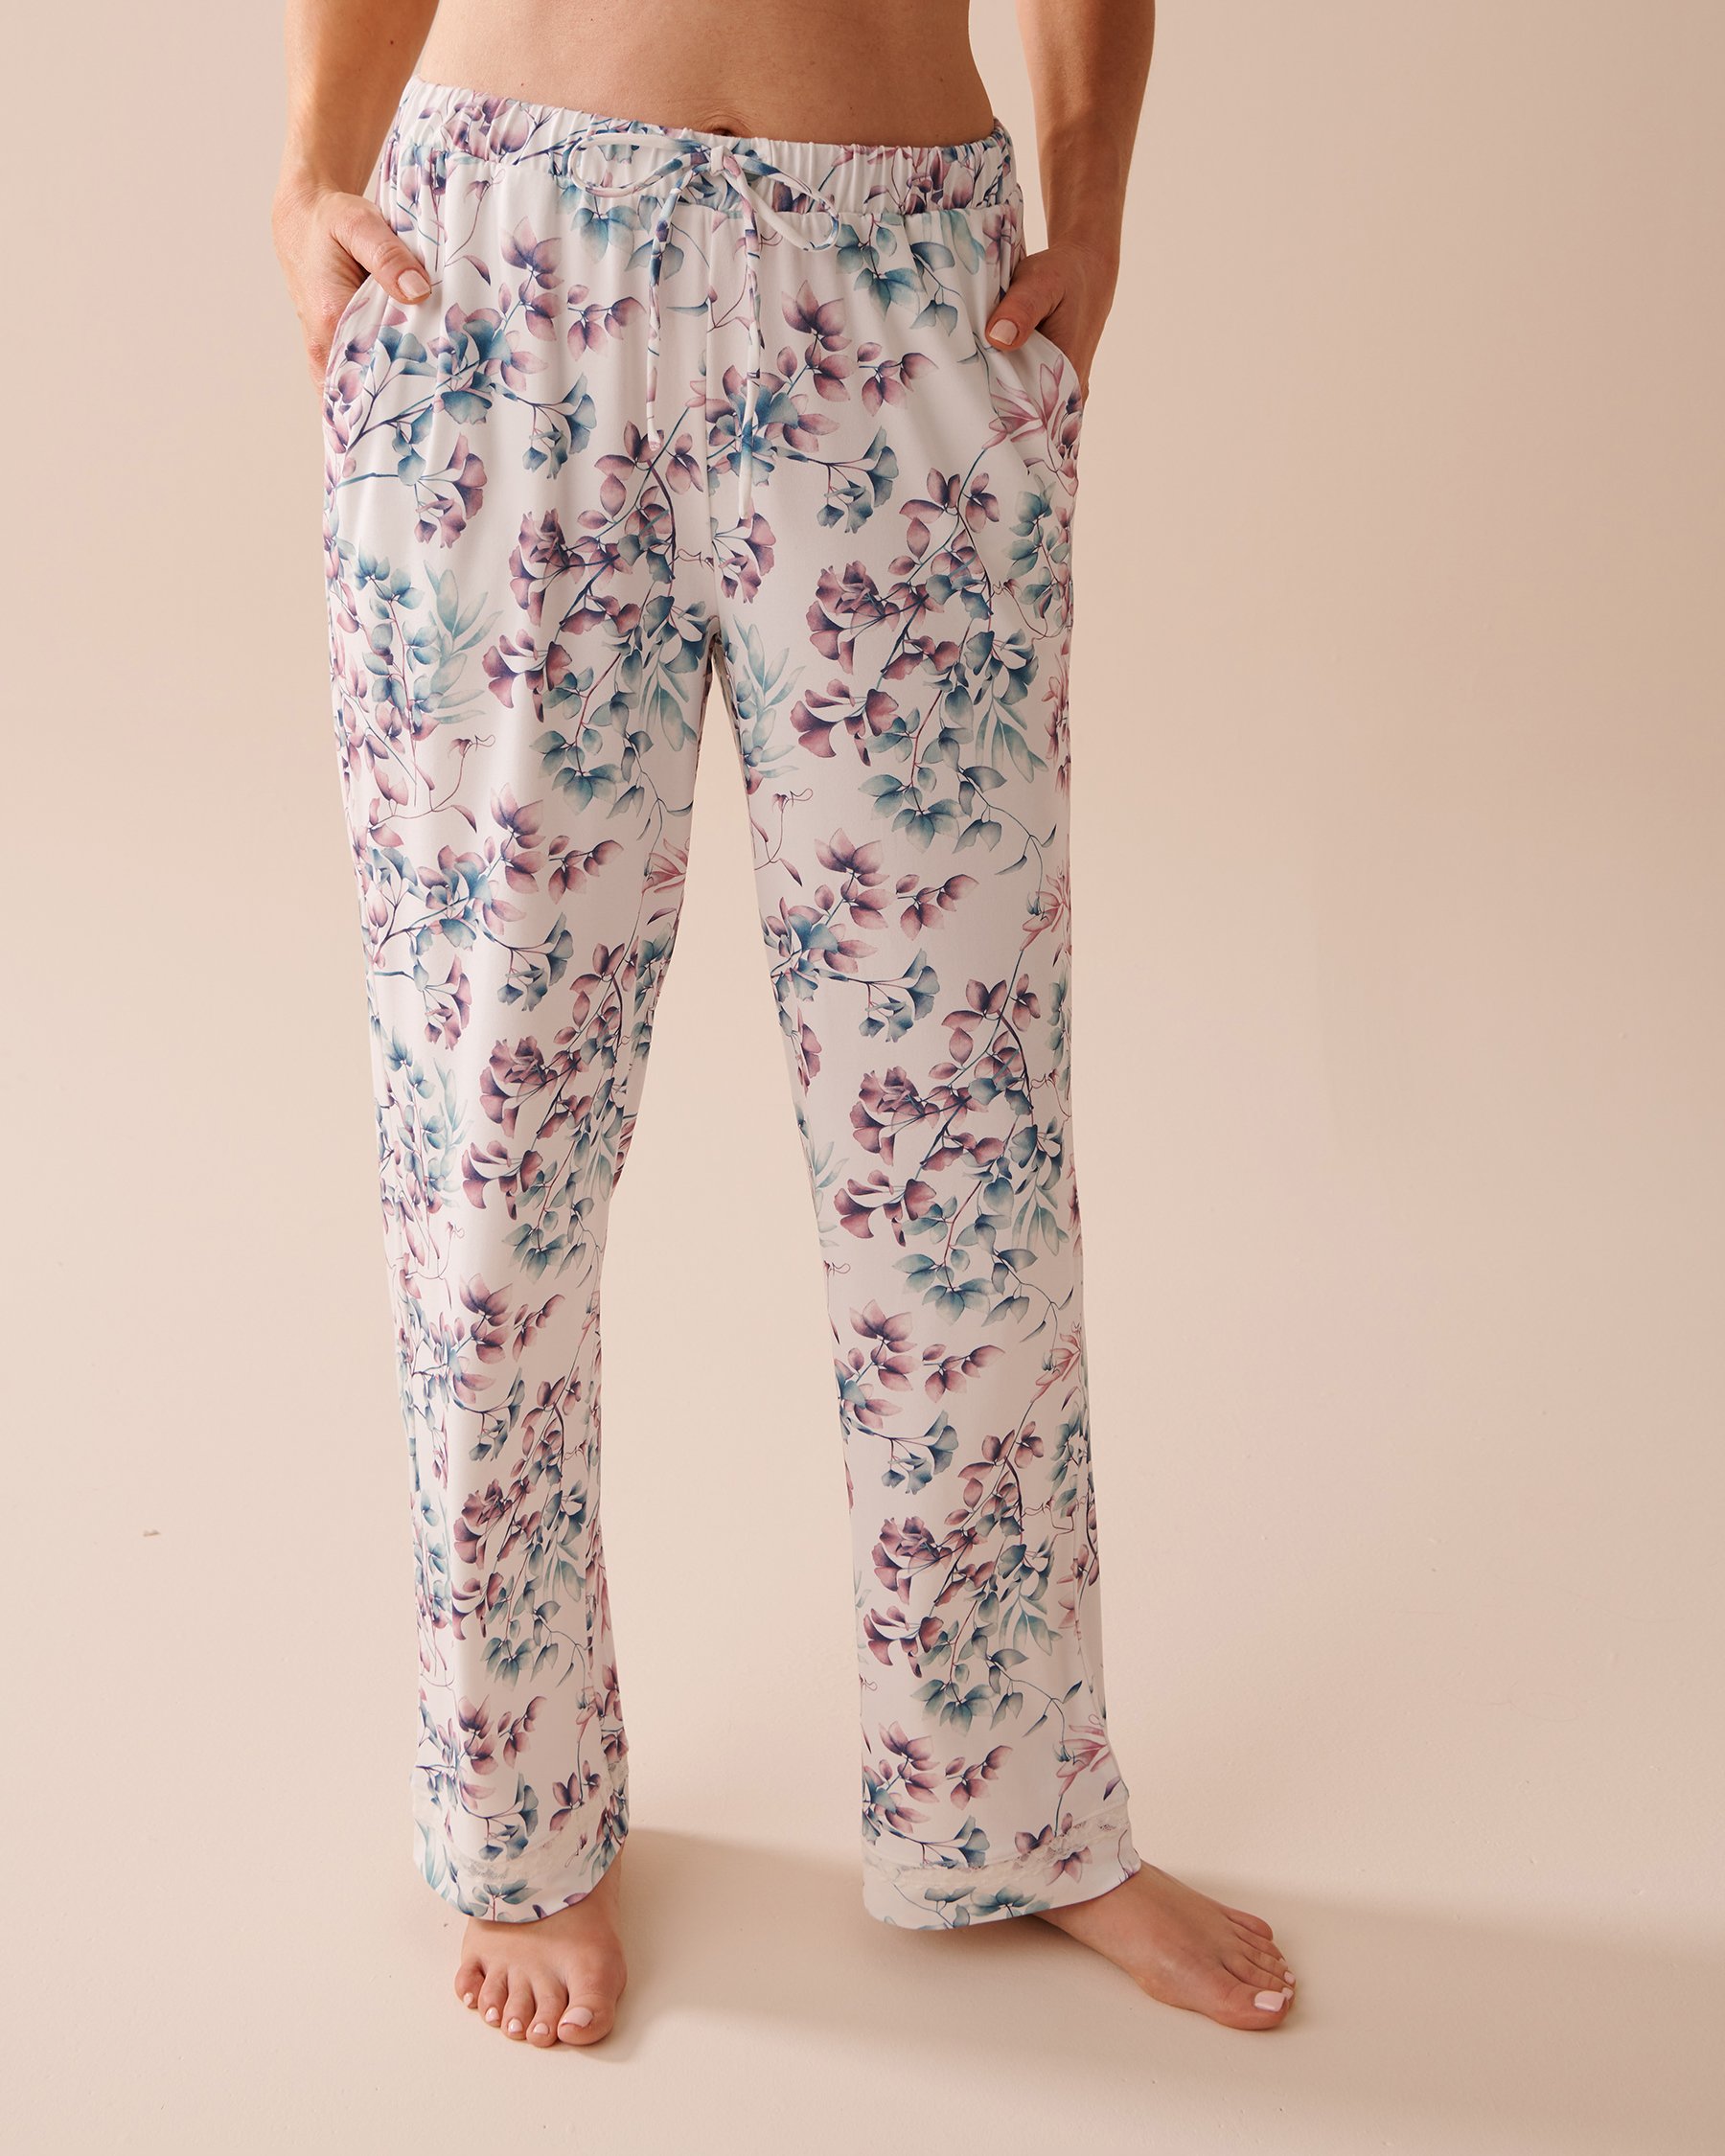 Pajamas for women Funilai spring and summer new women's pajamas